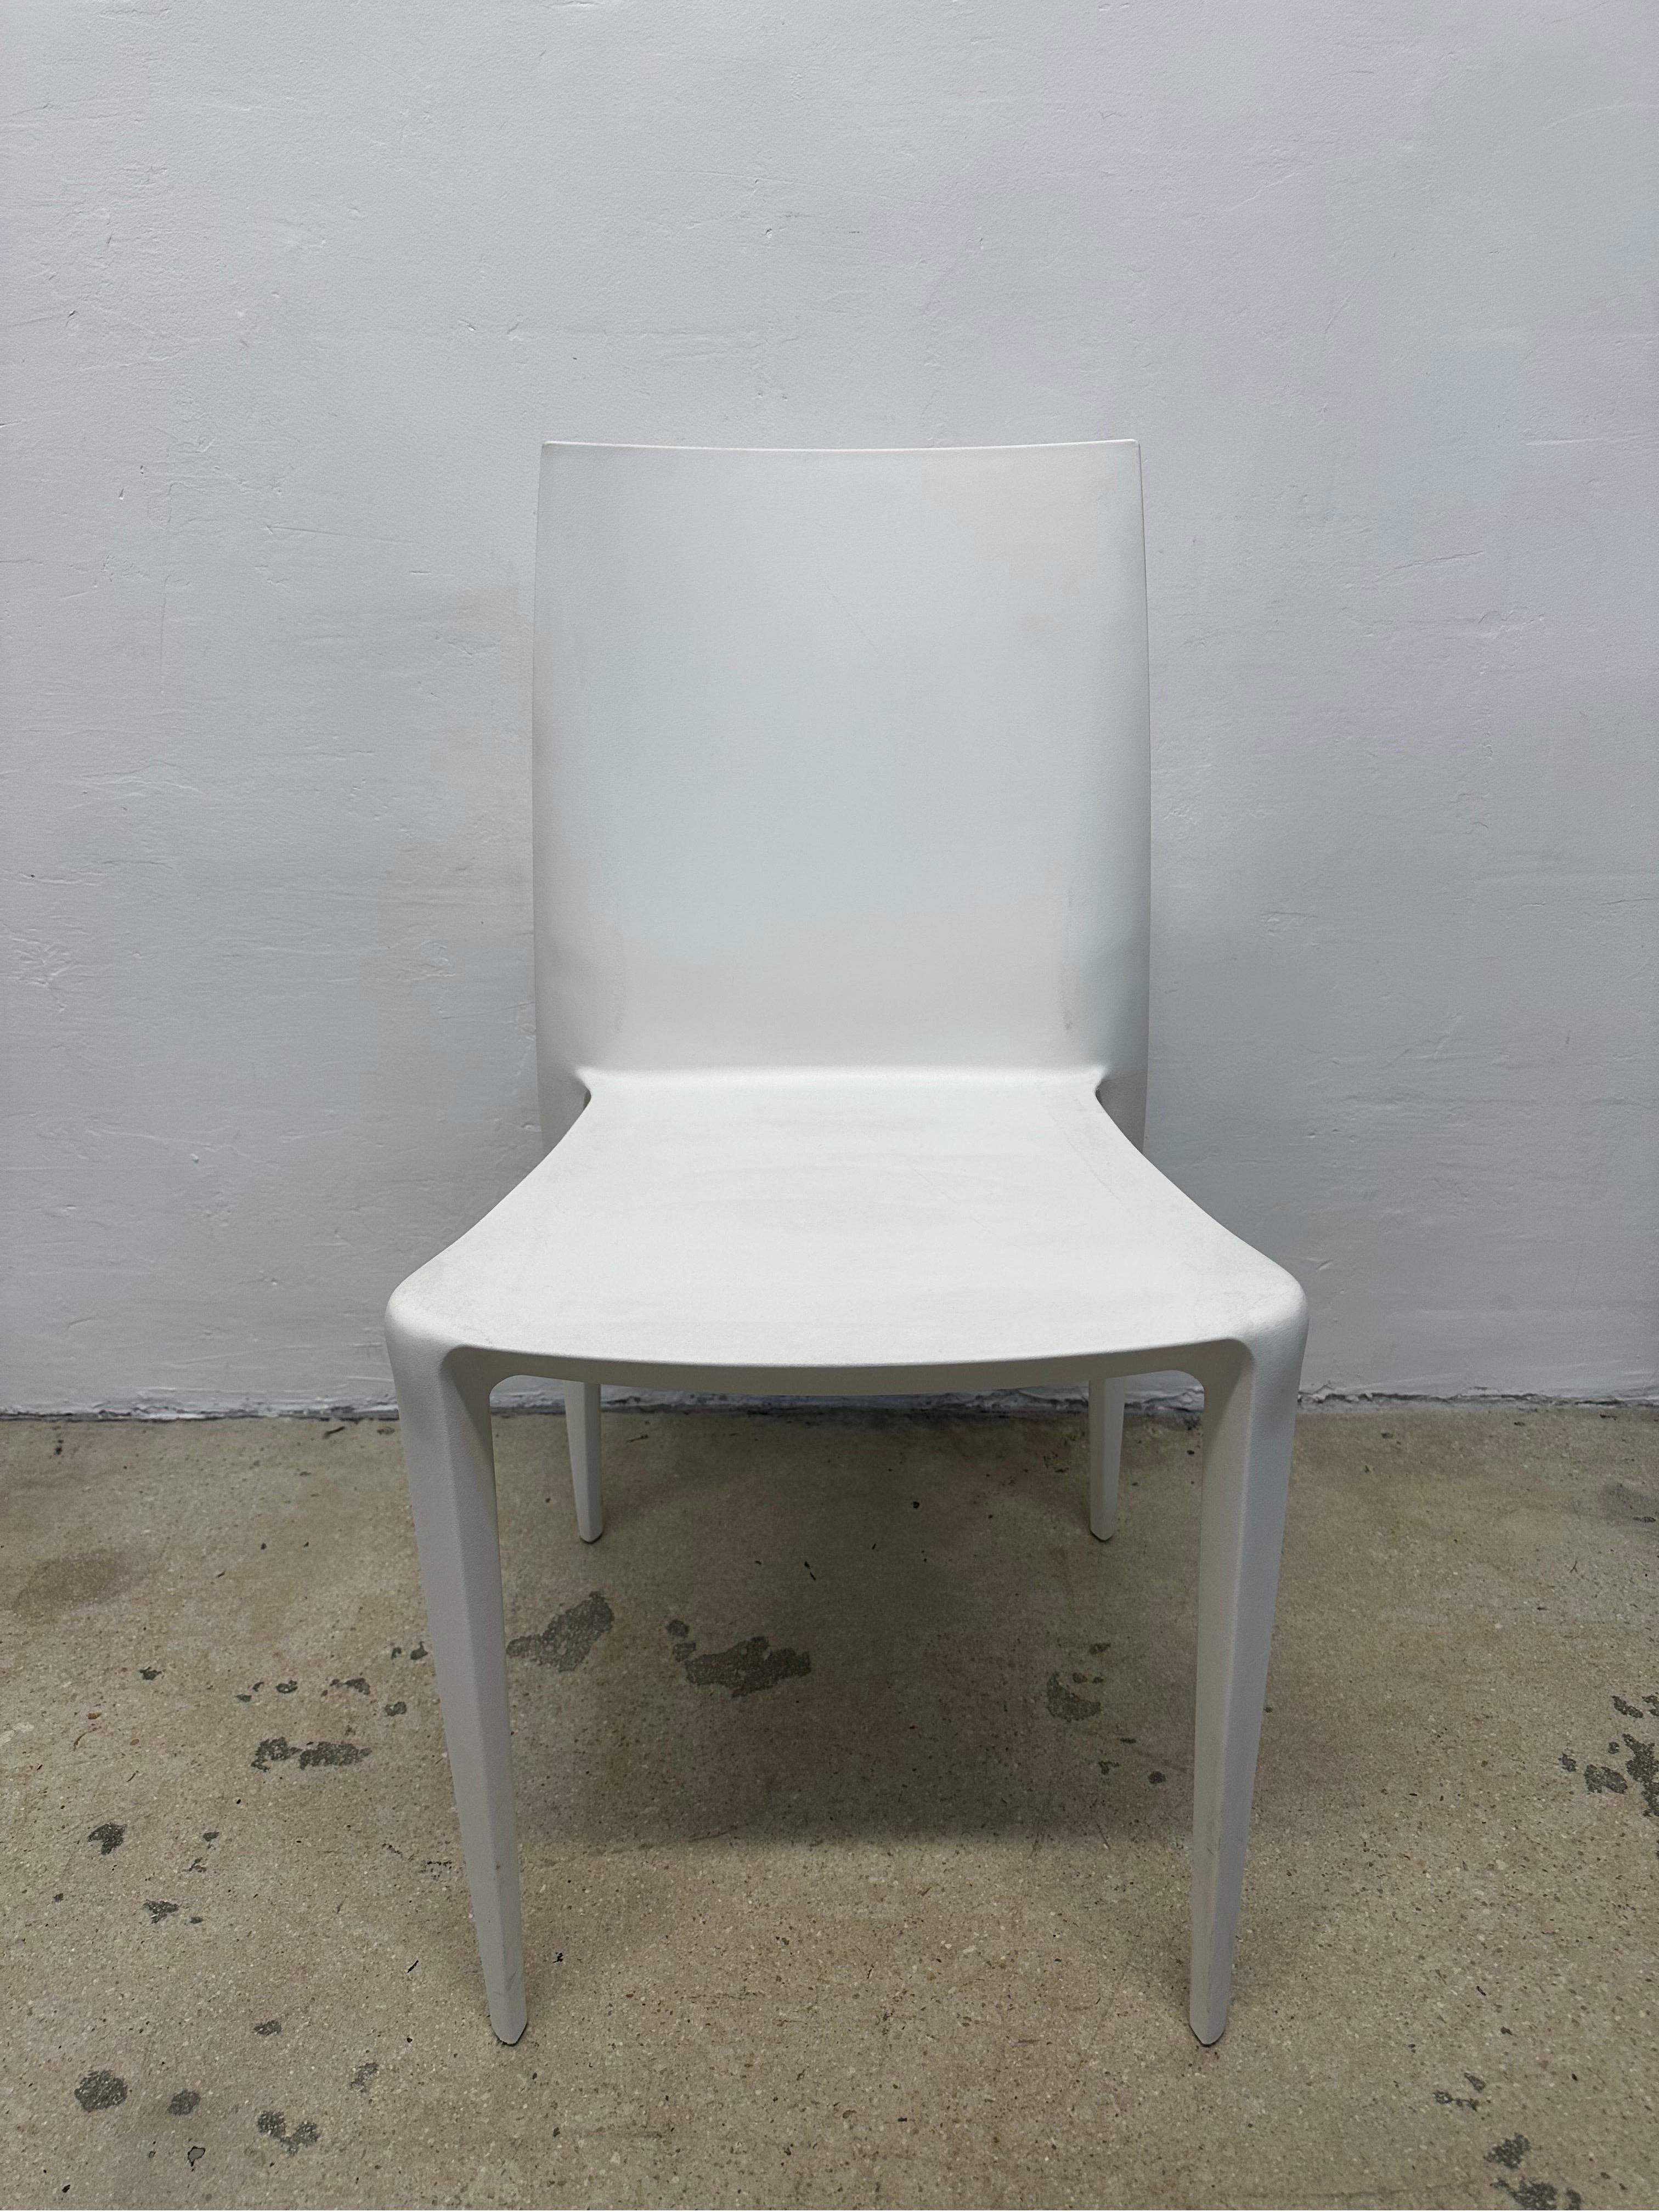 Ensemble de neuf chaises Bellini blanches sculpturales conçues par Mario Bellini pour Heller.  Ces chaises en plastique légères, polyvalentes et empilables sont parfaites pour l'intérieur ou l'extérieur.